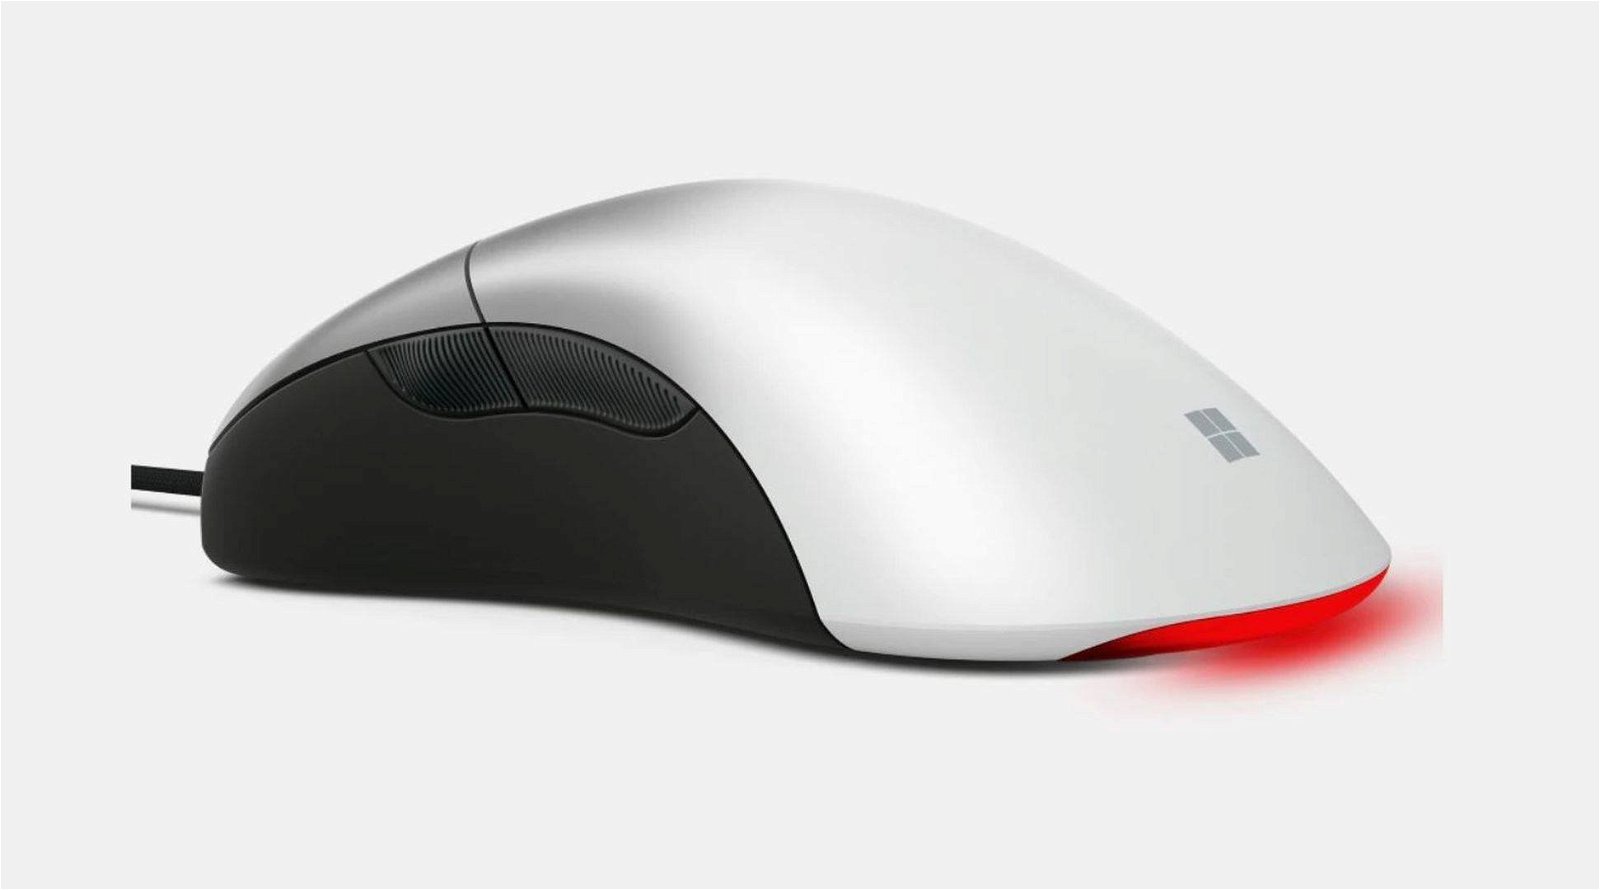 Immagine di Pro IntelliMouse, Microsoft sforna un mouse per giocatori